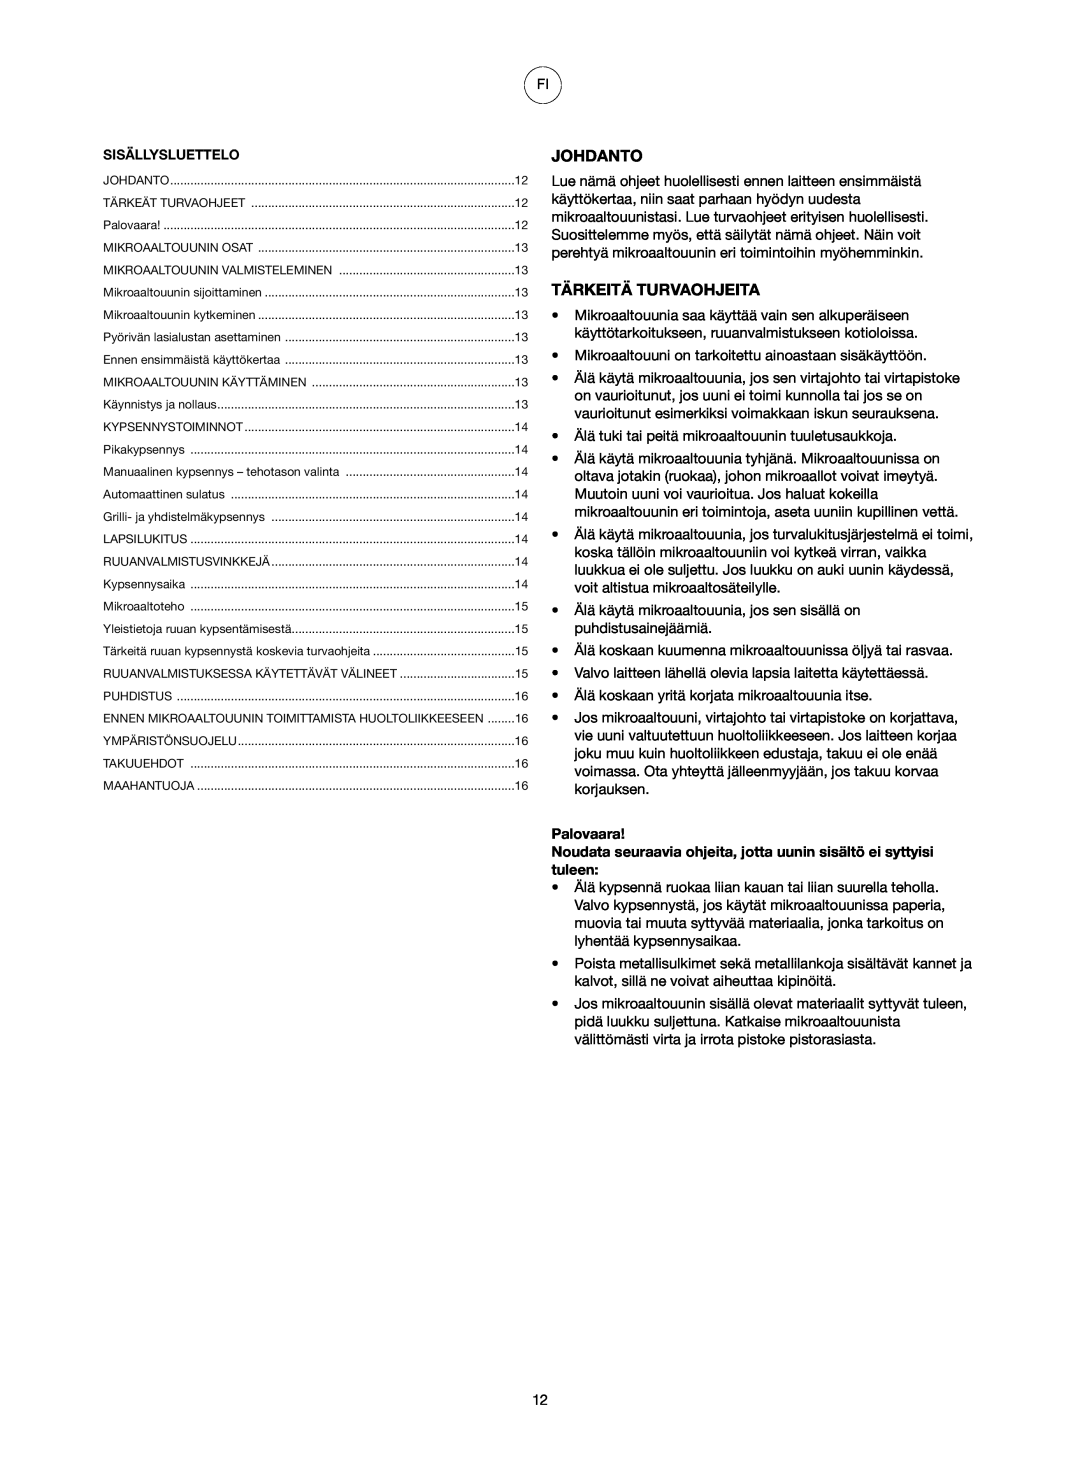 Melissa 753-084 manual Johdanto, Tärkeitä Turvaohjeita, Palovaara 